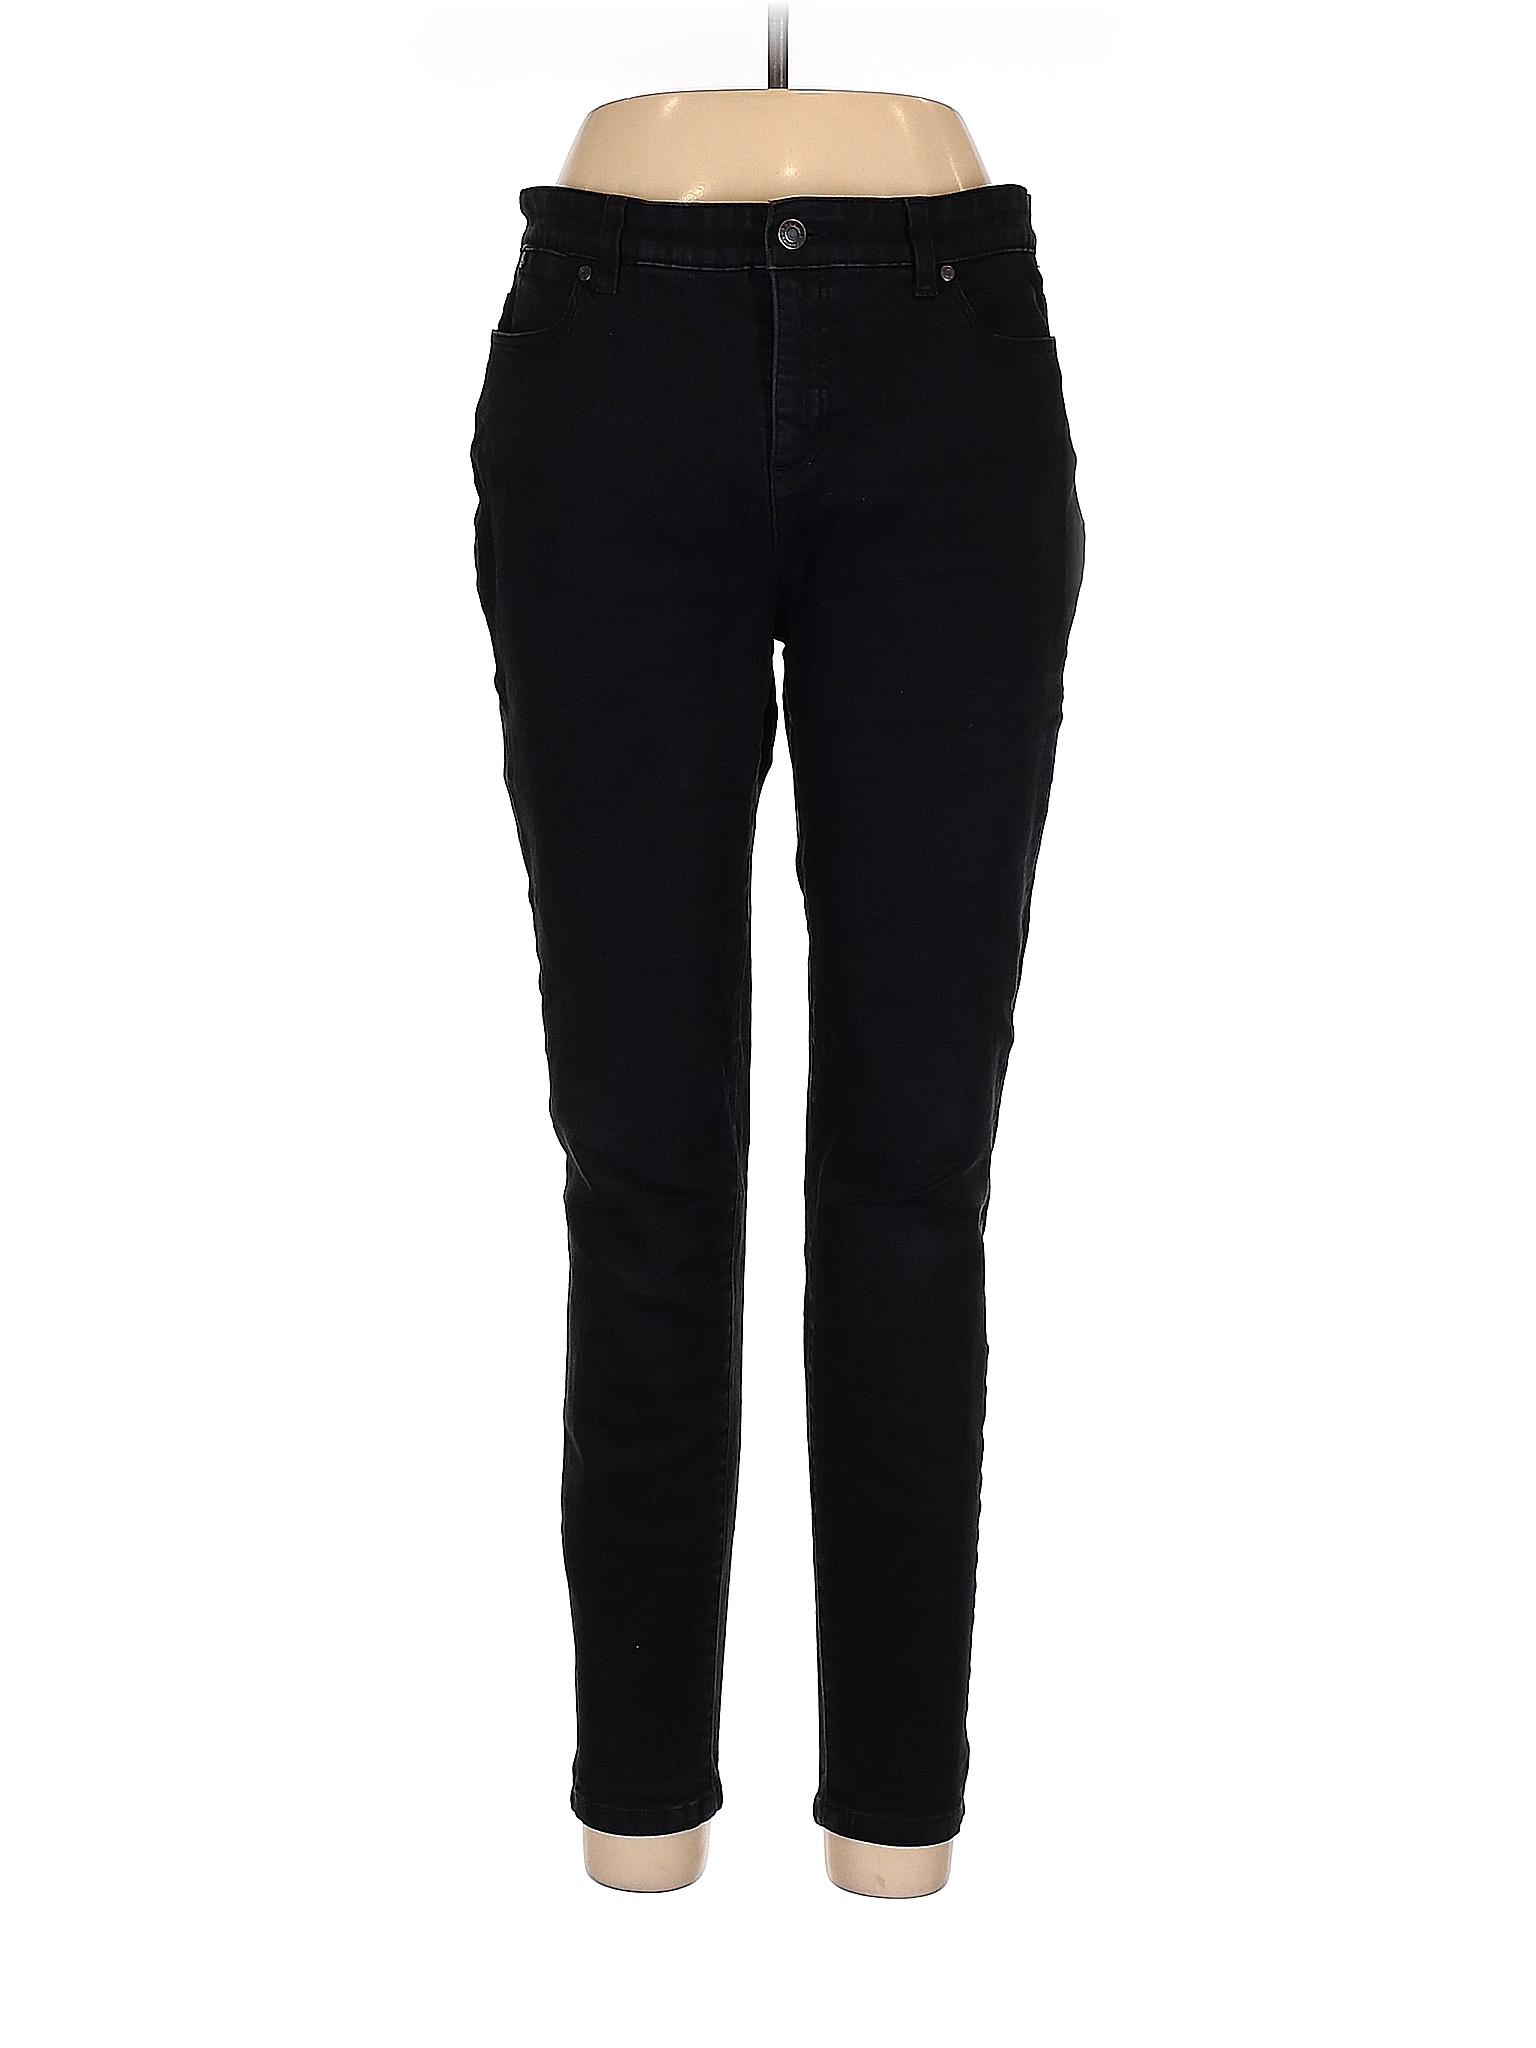 Talbots Outlet Solid Black Jeans Size 10 - 52% off | thredUP